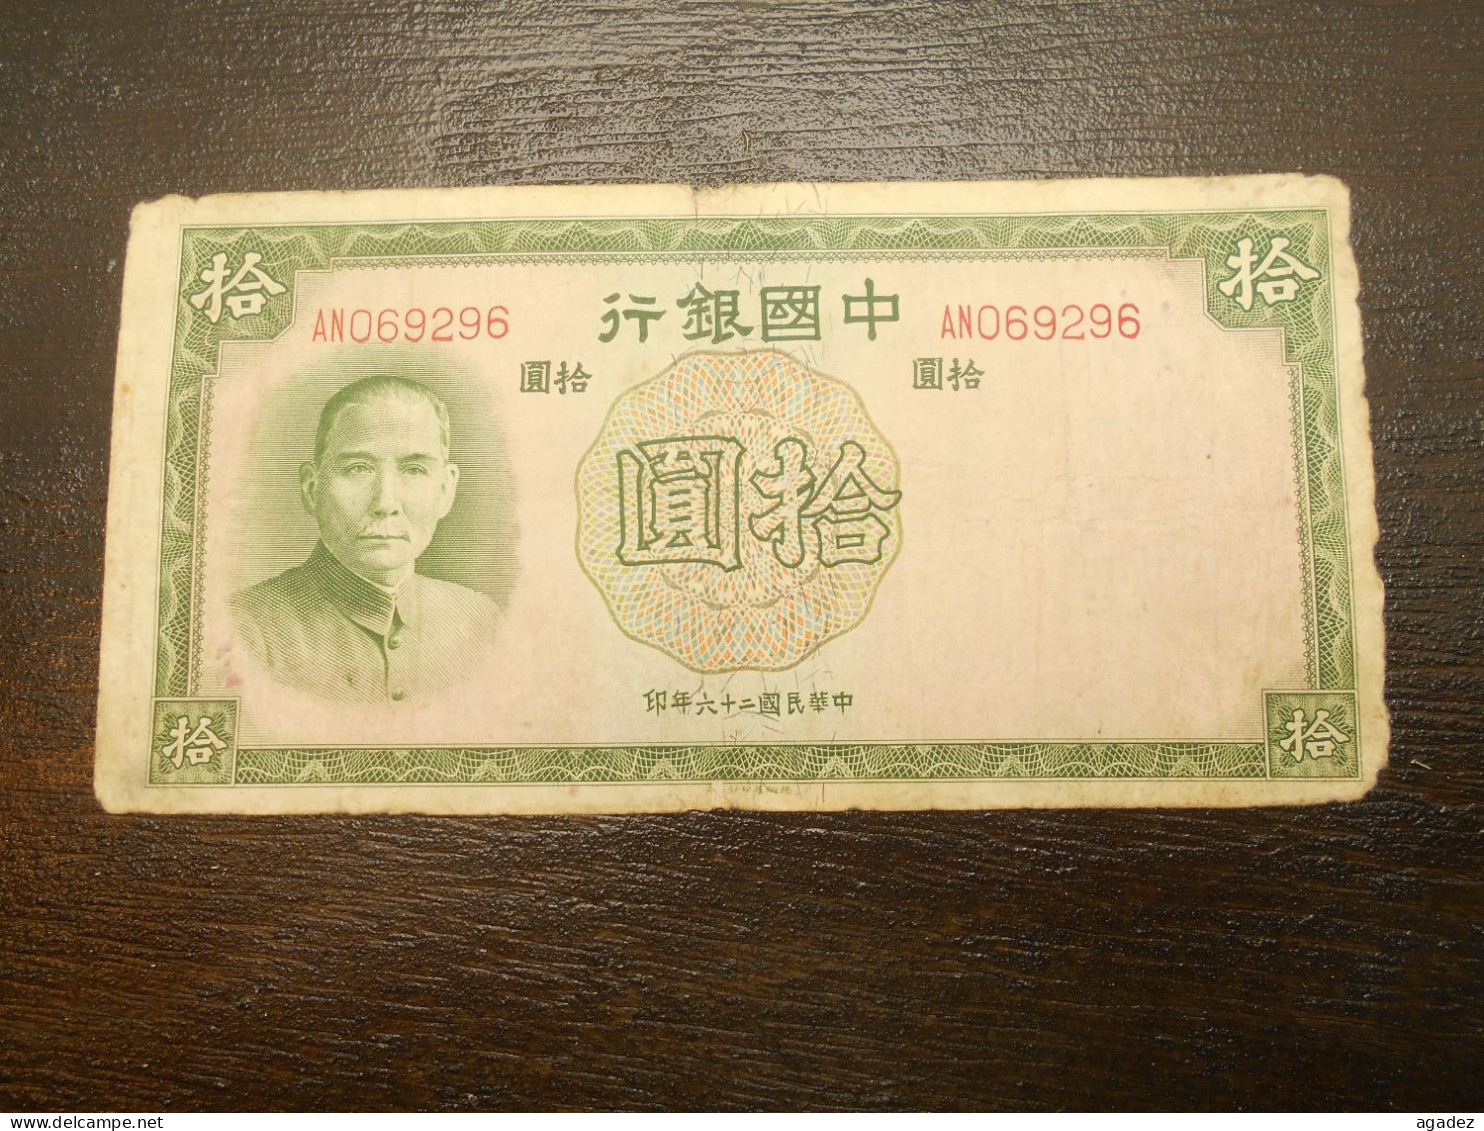 Ancien Billet De Banque Chinois Chine  China 10 Yuan 1937 - China